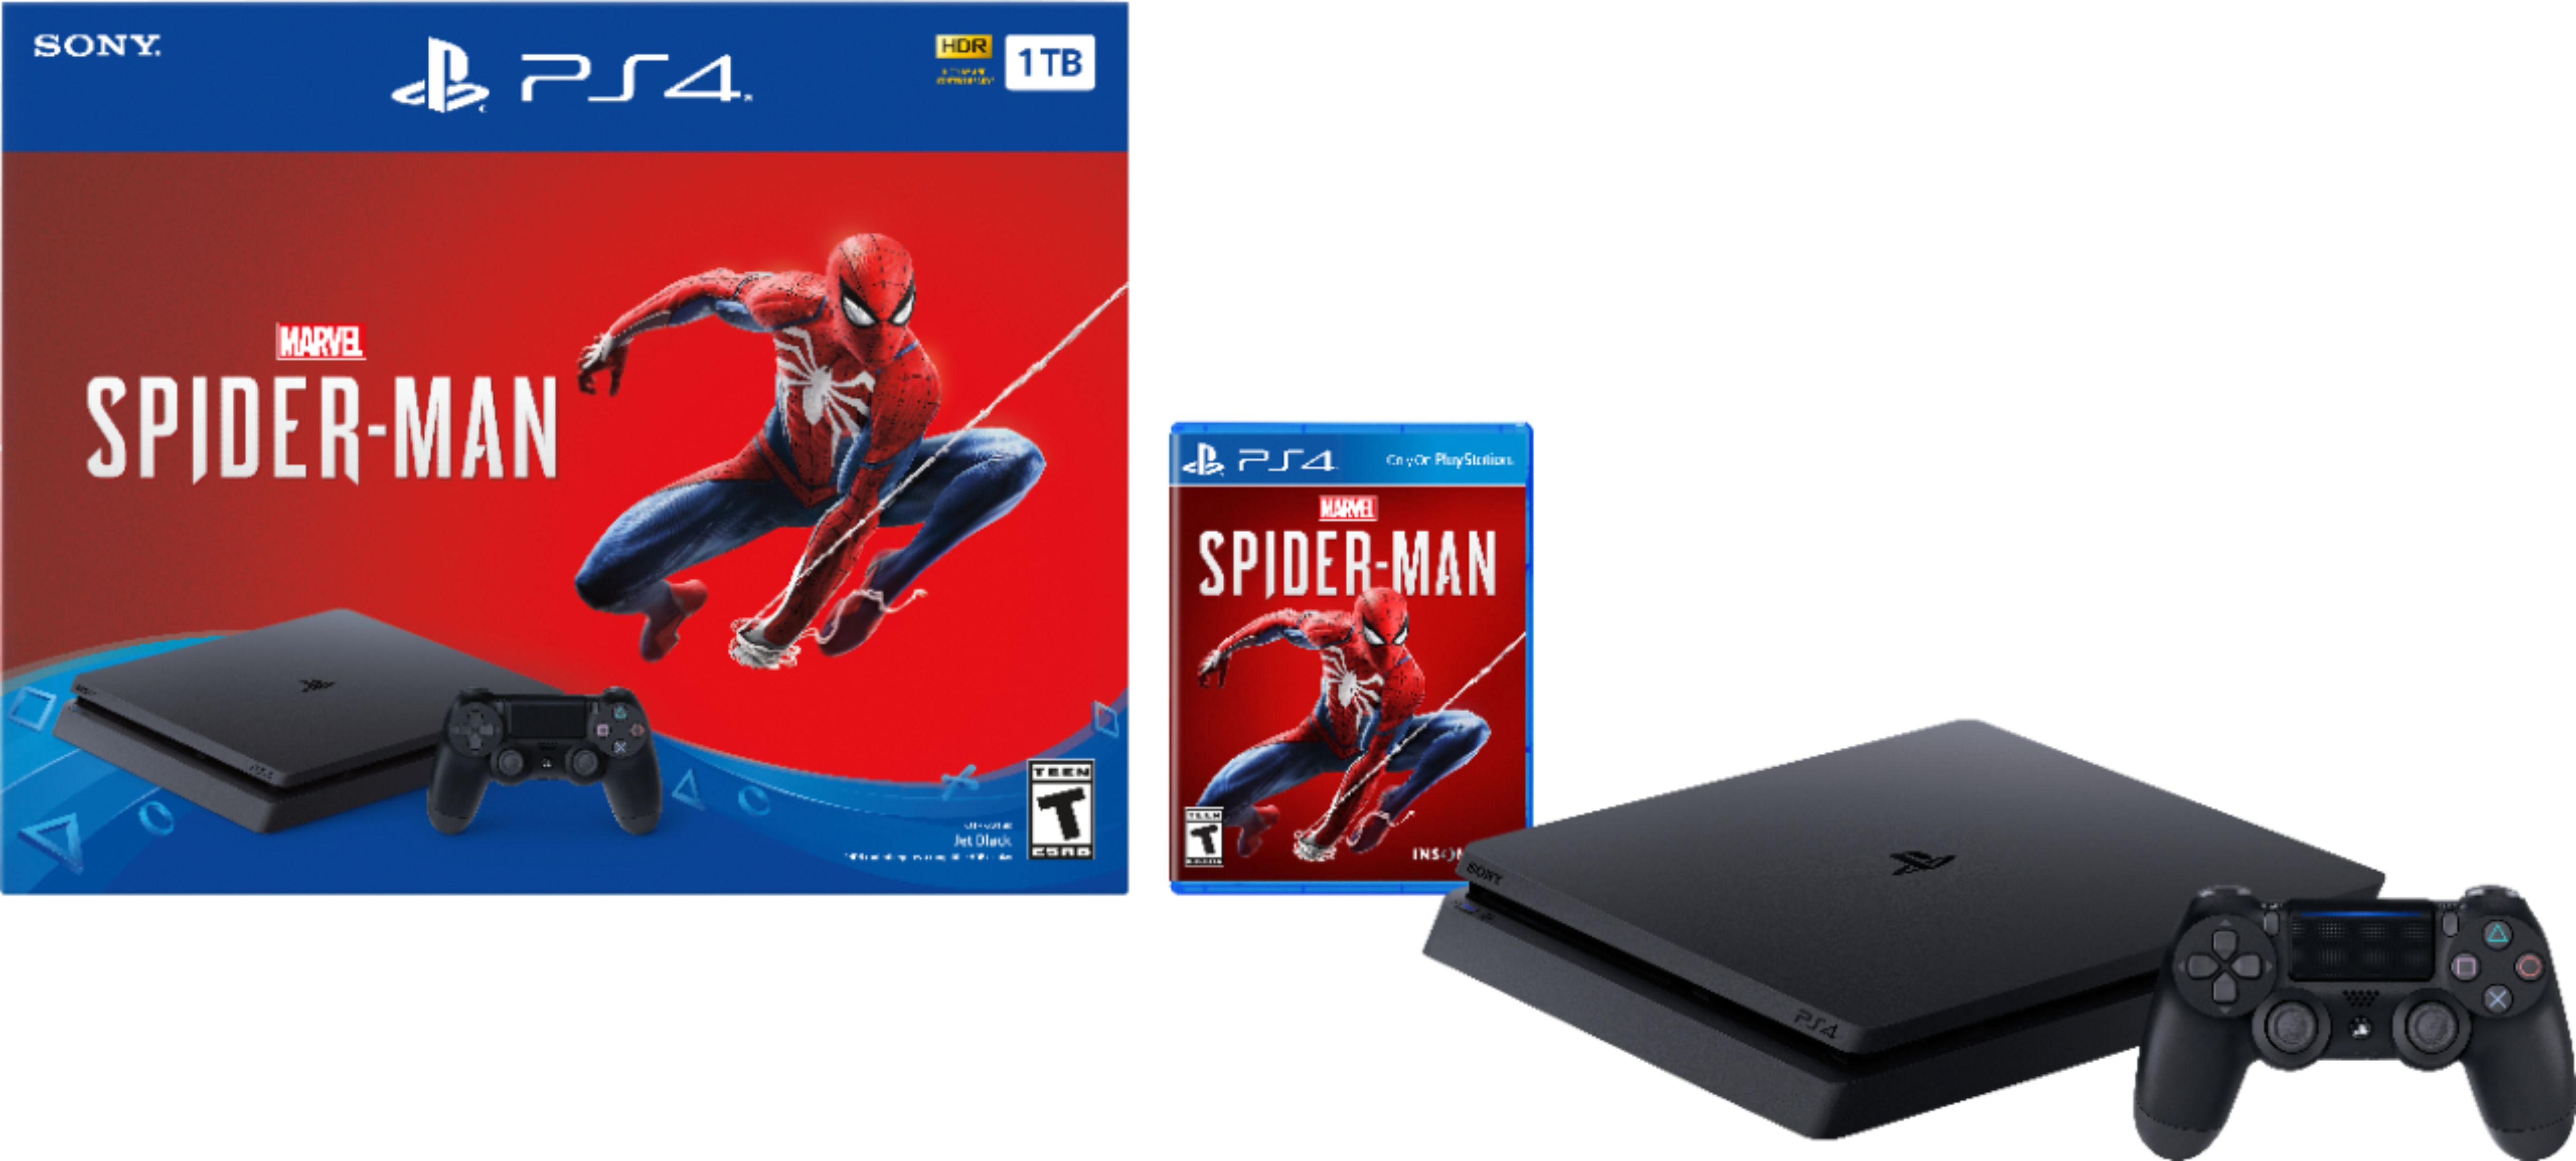 Opmærksomhed afregning dommer Sony PlayStation 4 1TB Marvel's Spider-Man Console Bundle Jet Black 3003217  - Best Buy